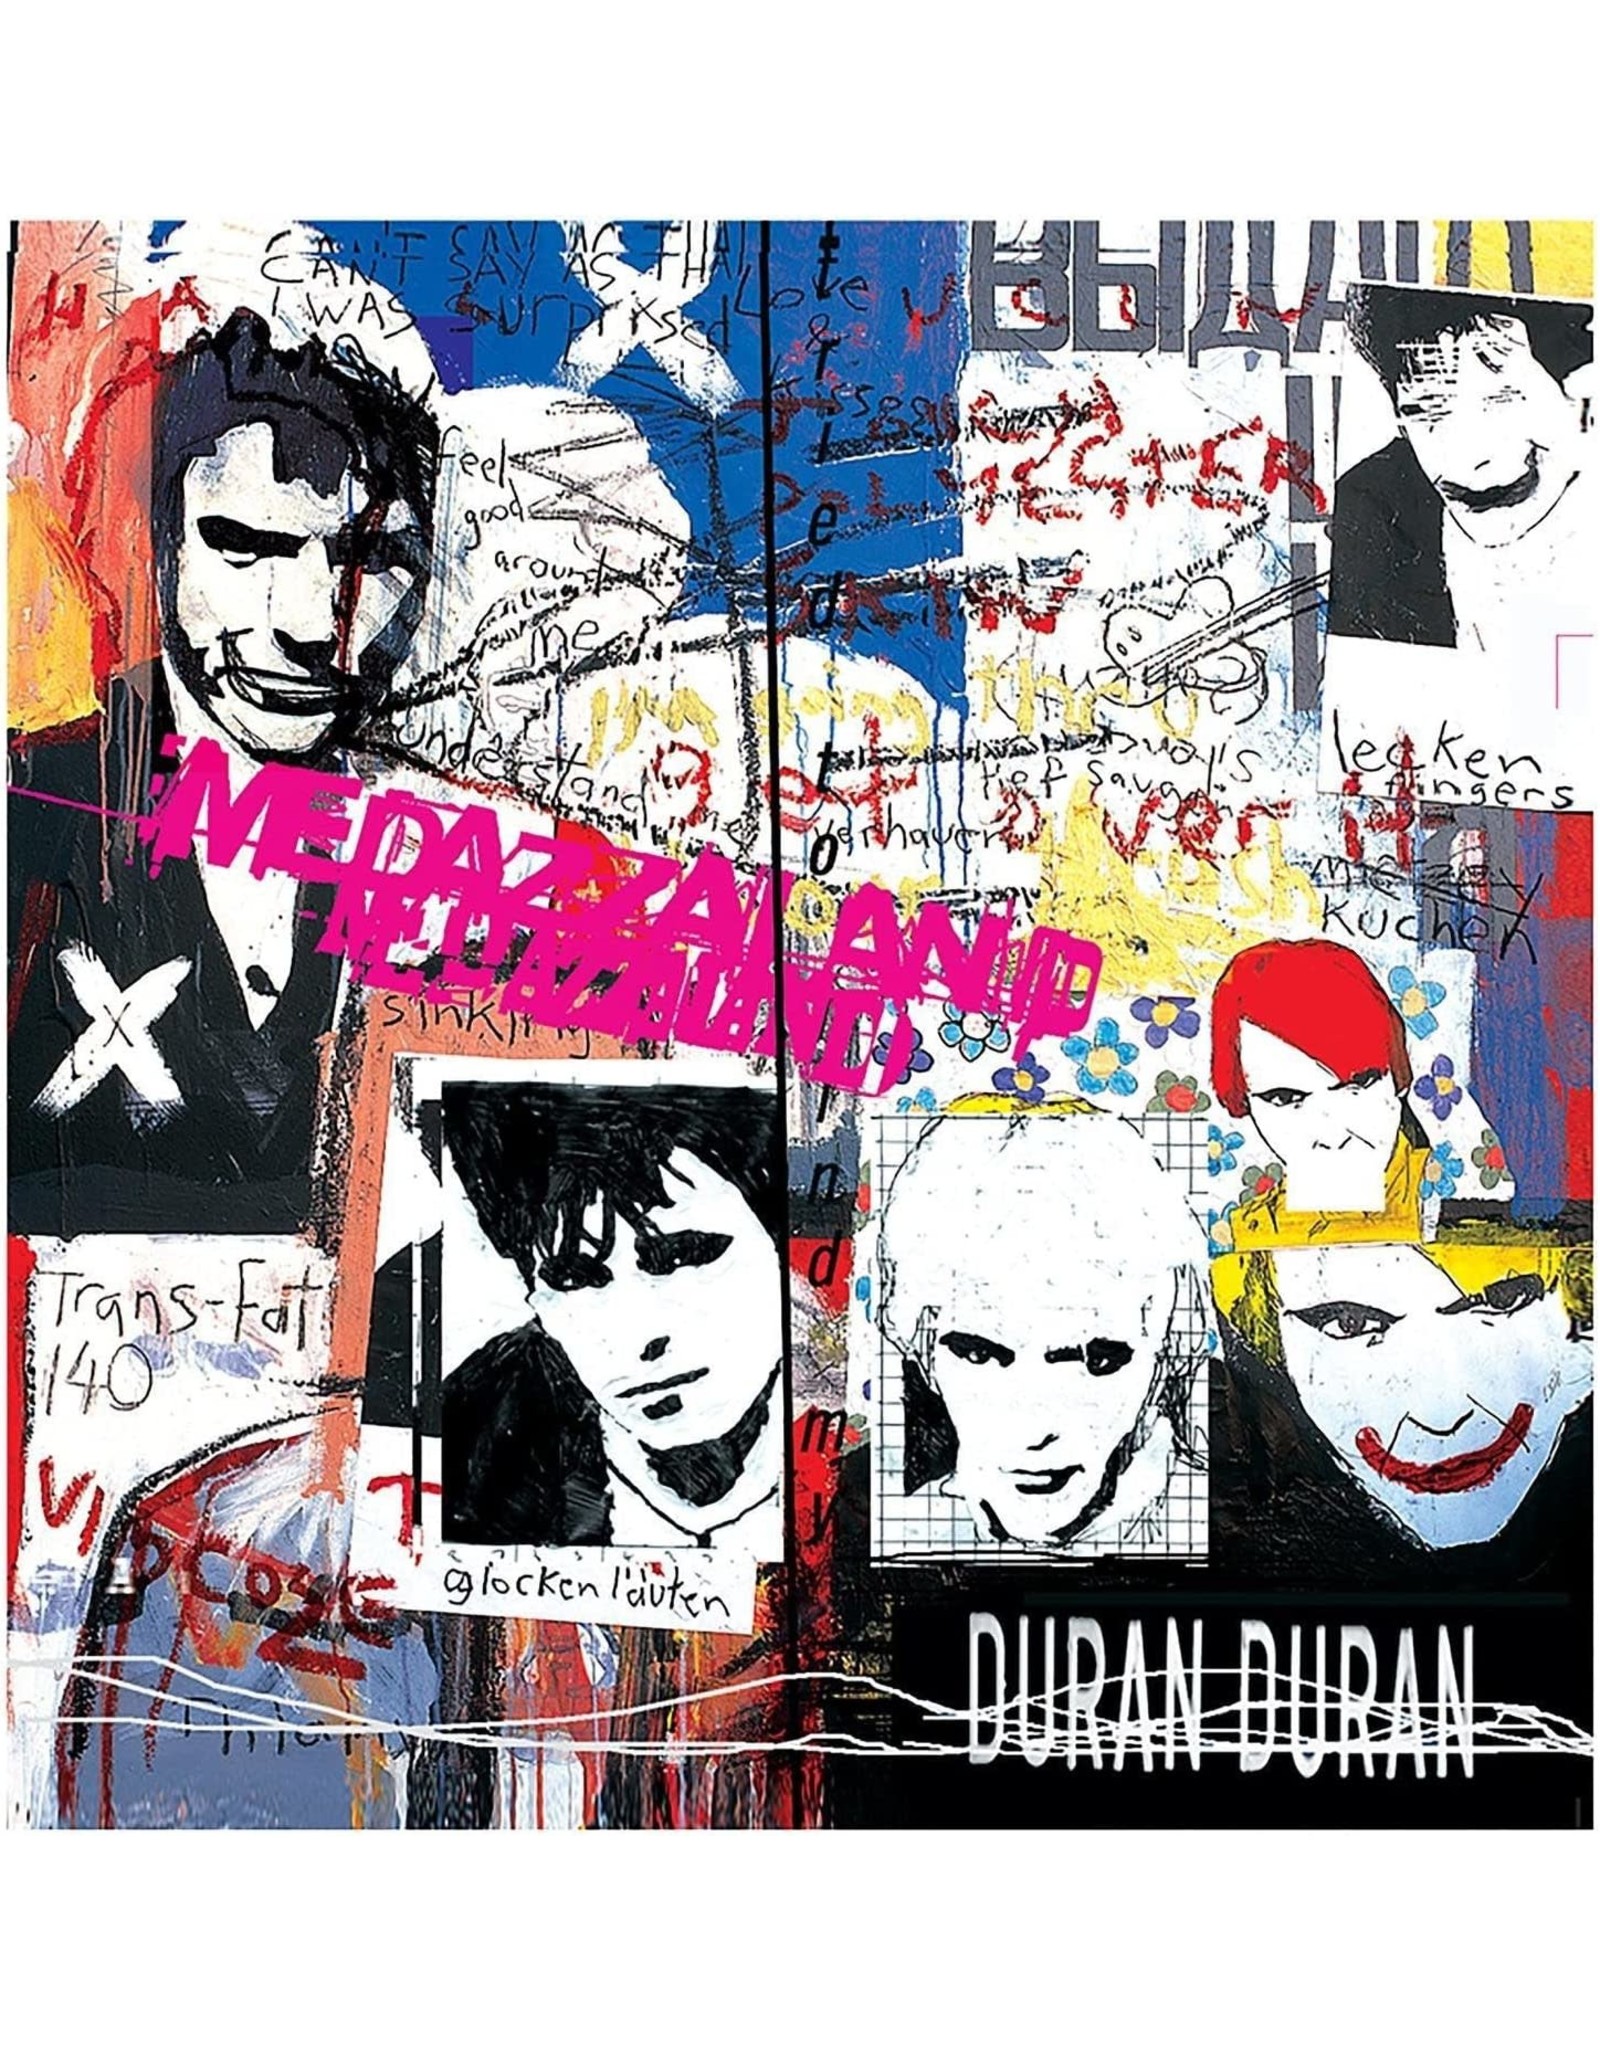 Duran Duran - Medazzaland (25th Anniversary) [Neon Pink Vinyl]